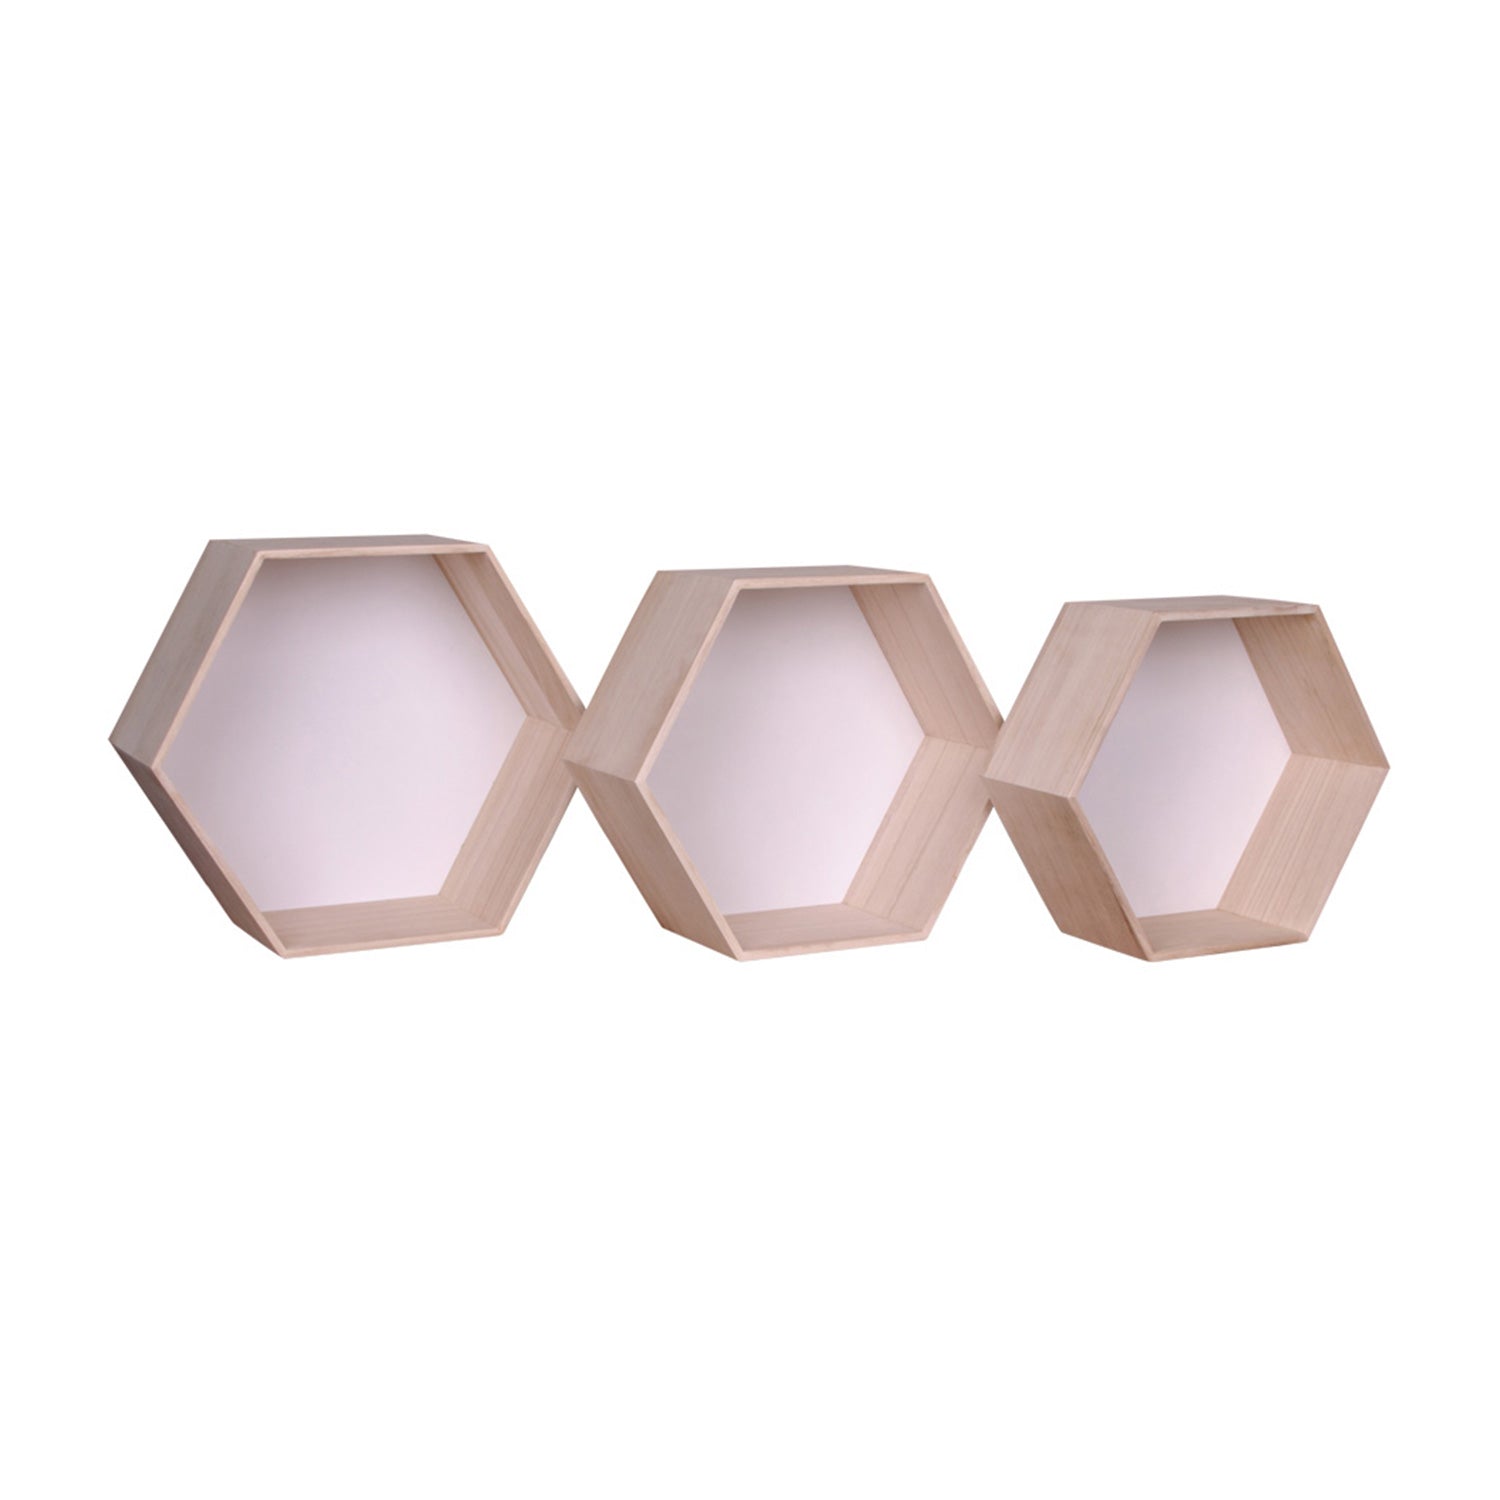 Garda Wandplank Hout Hexagons Set van 3